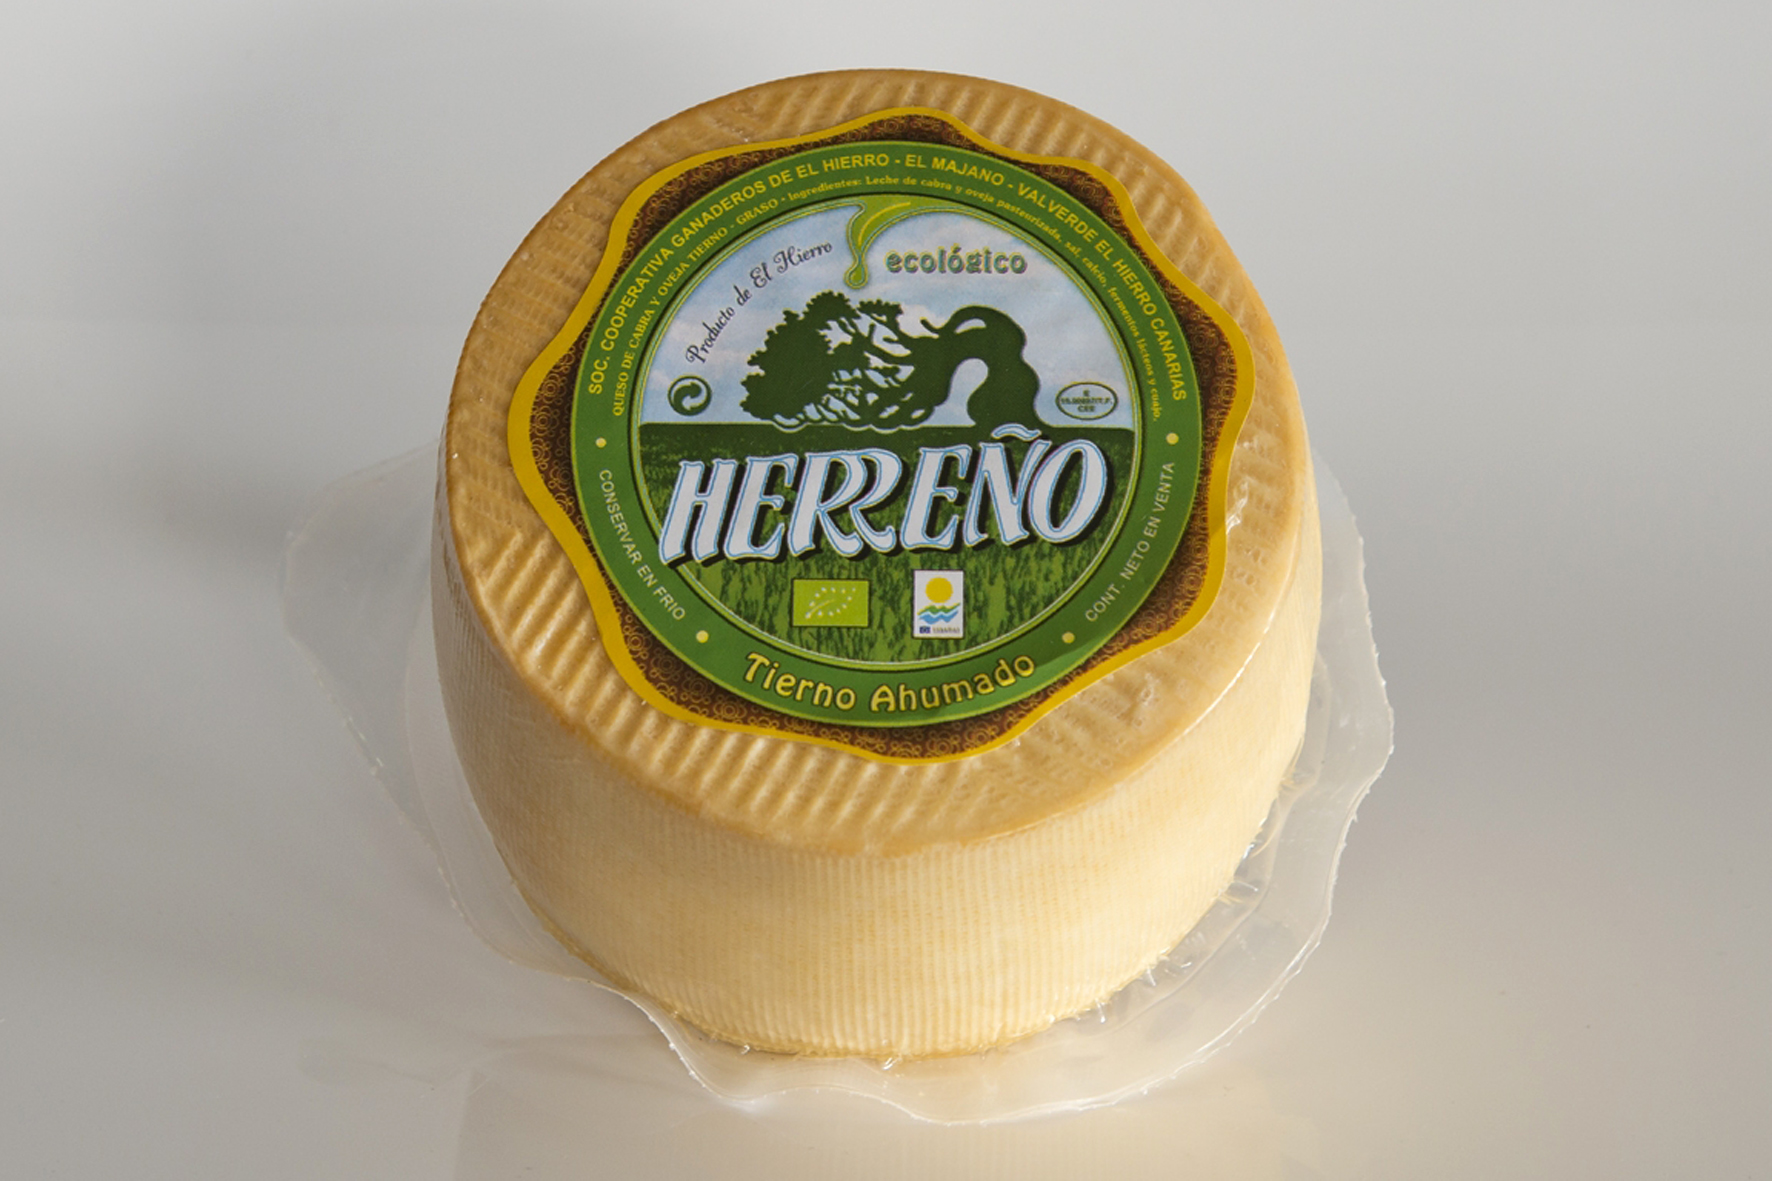 El queso herreño tierno ahumado y semicurado natural de SC Ganaderos El Hierro medalla de bronce en el World Cheese Awards 2021